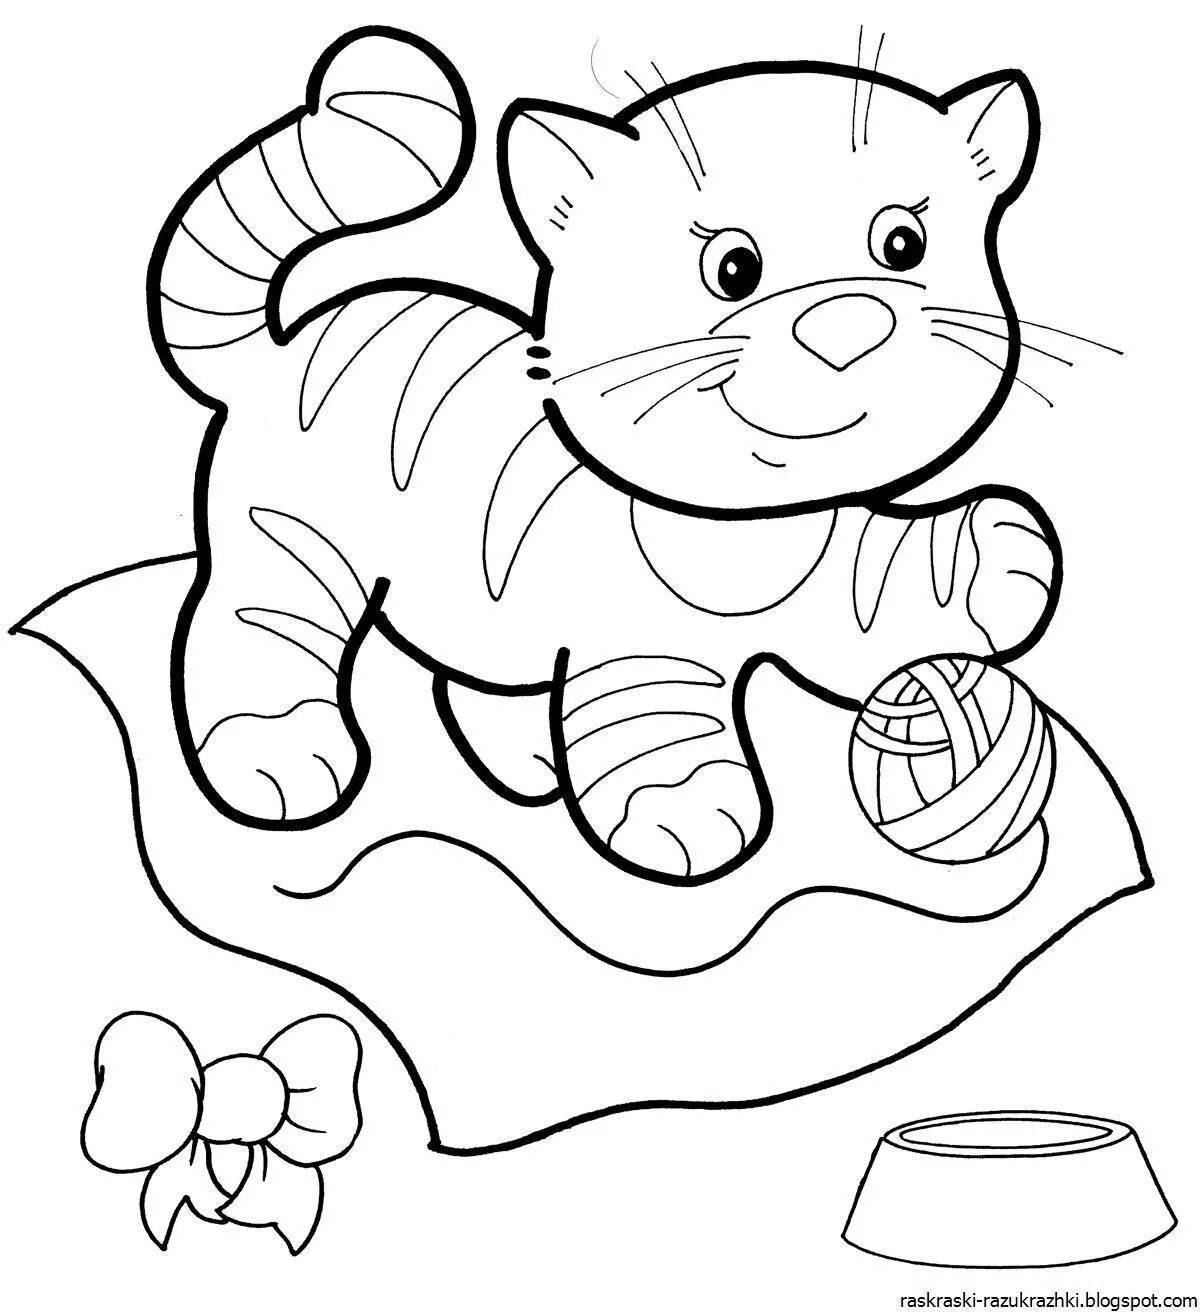 Unique cat coloring page for kids